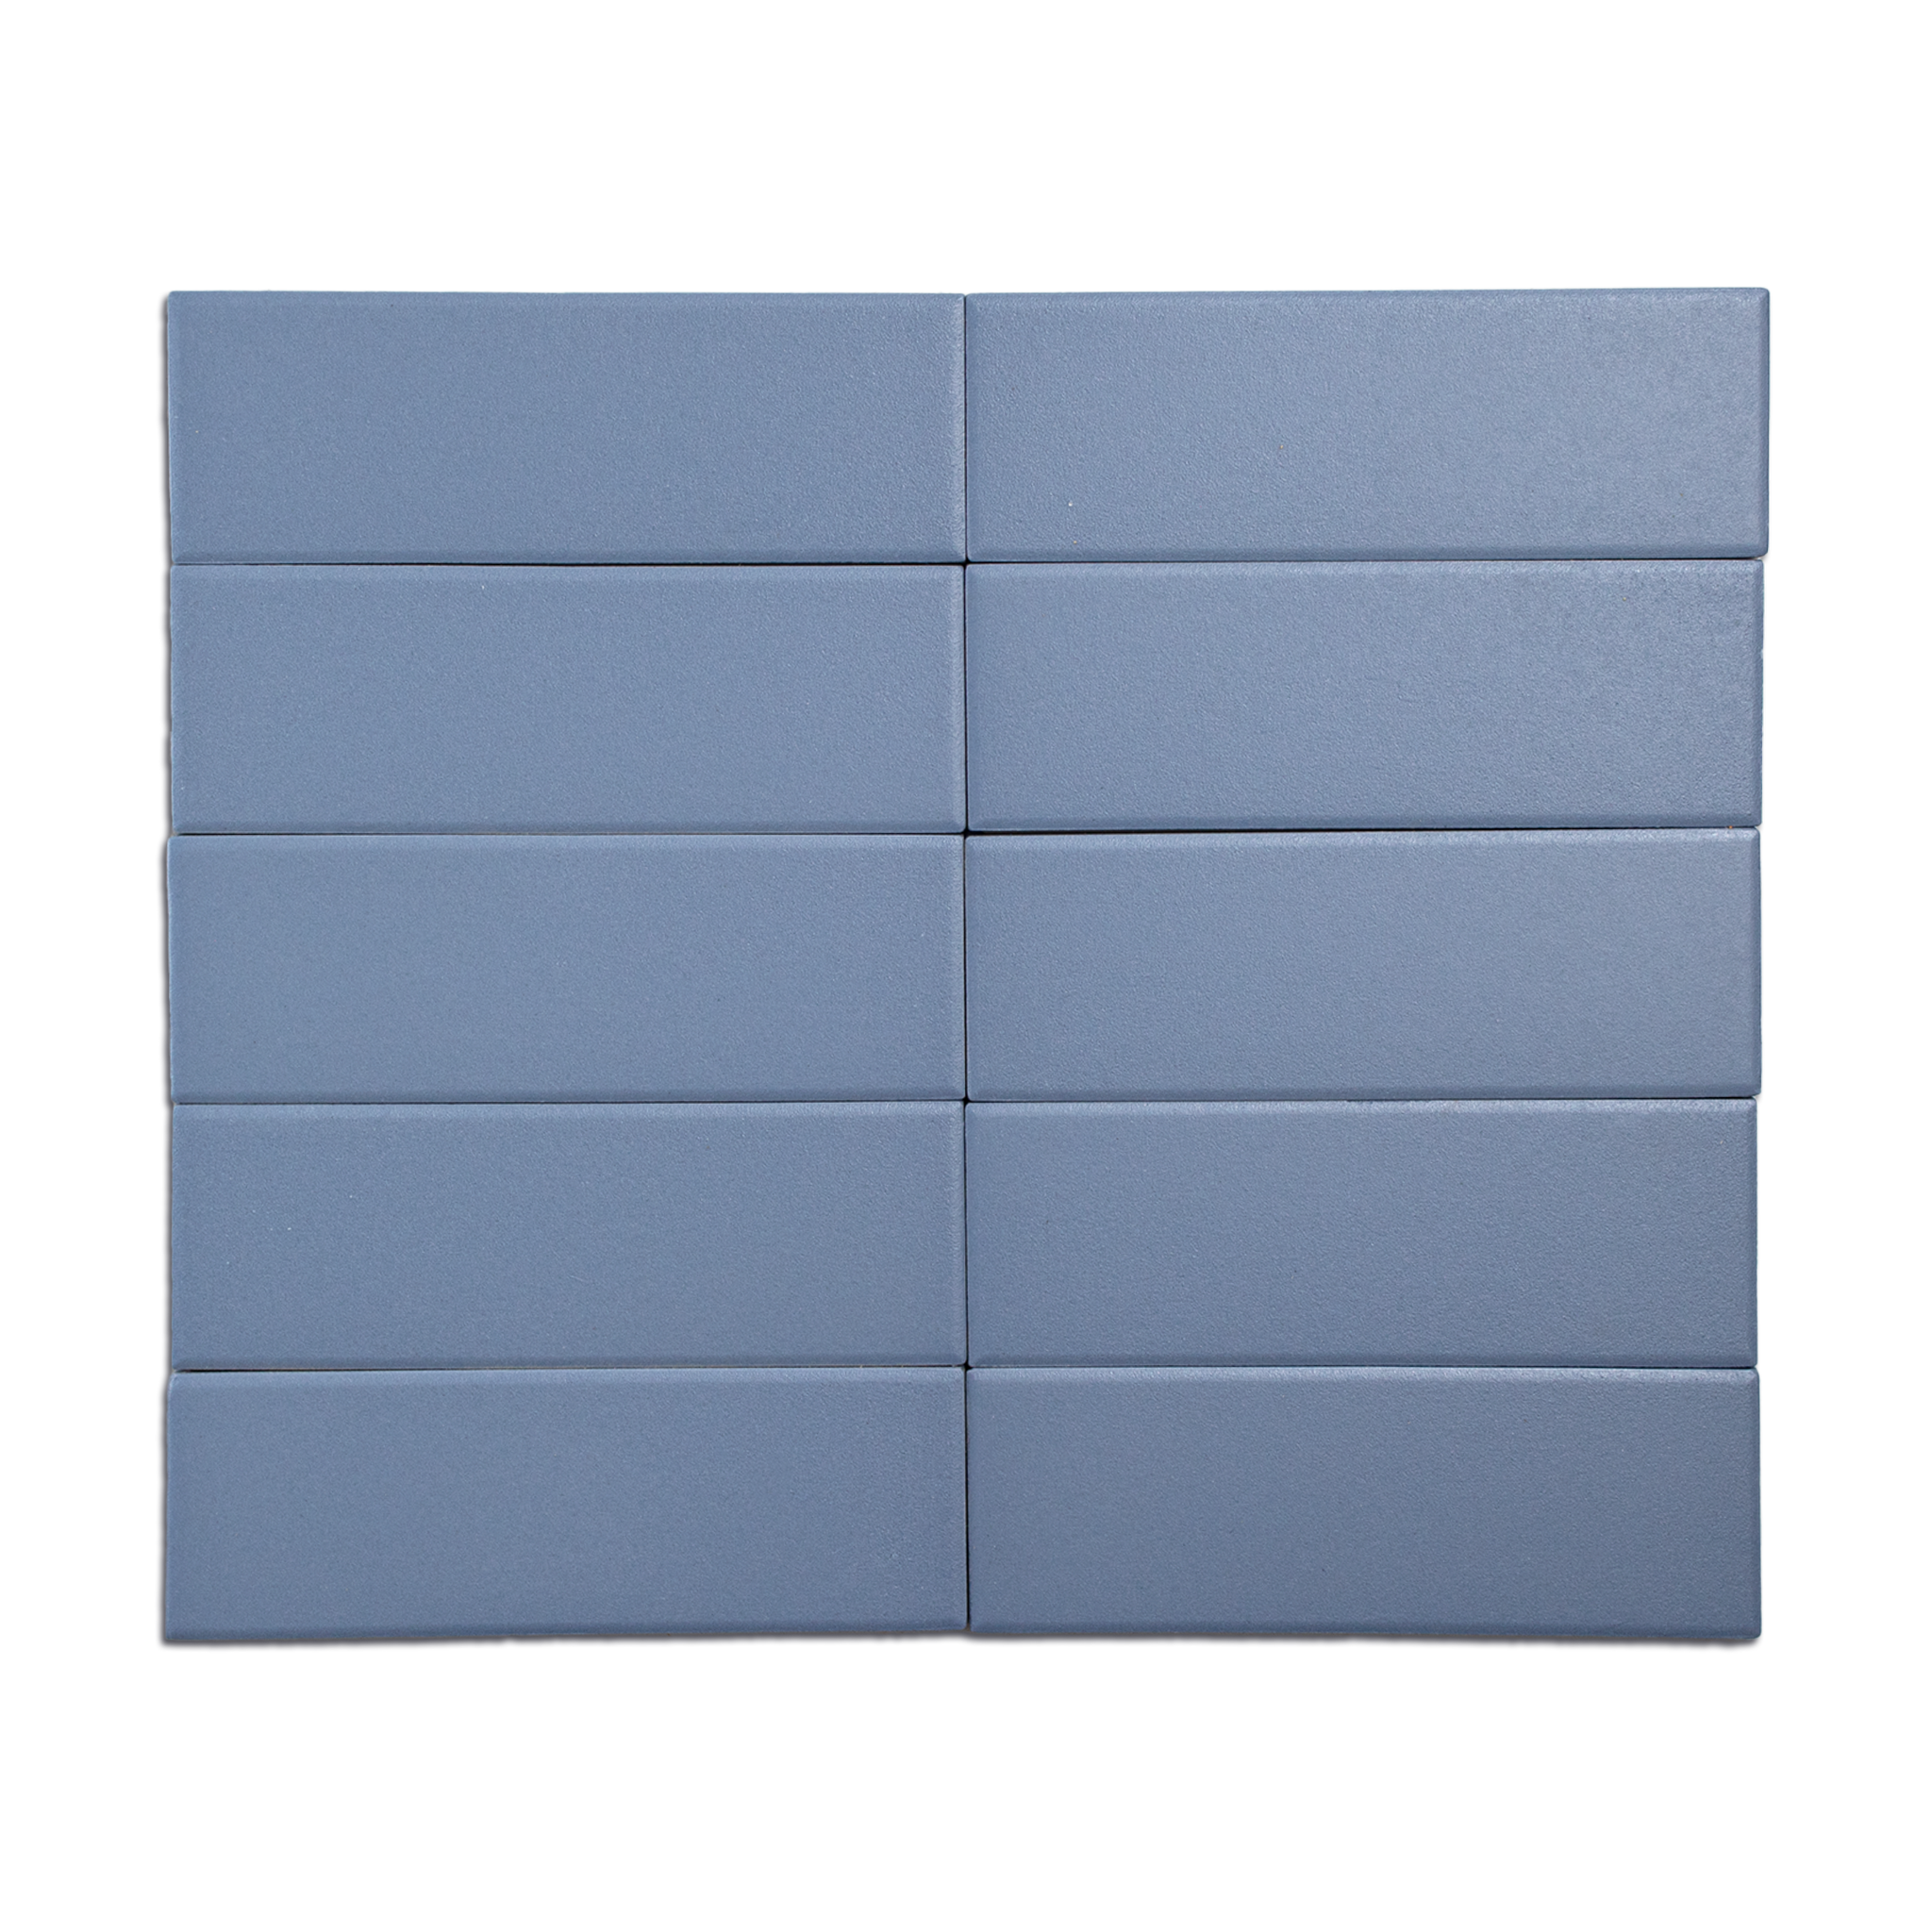 Trucco Rectangle Cornflower Blue 2x5.5 Full Body Porcelain Tile